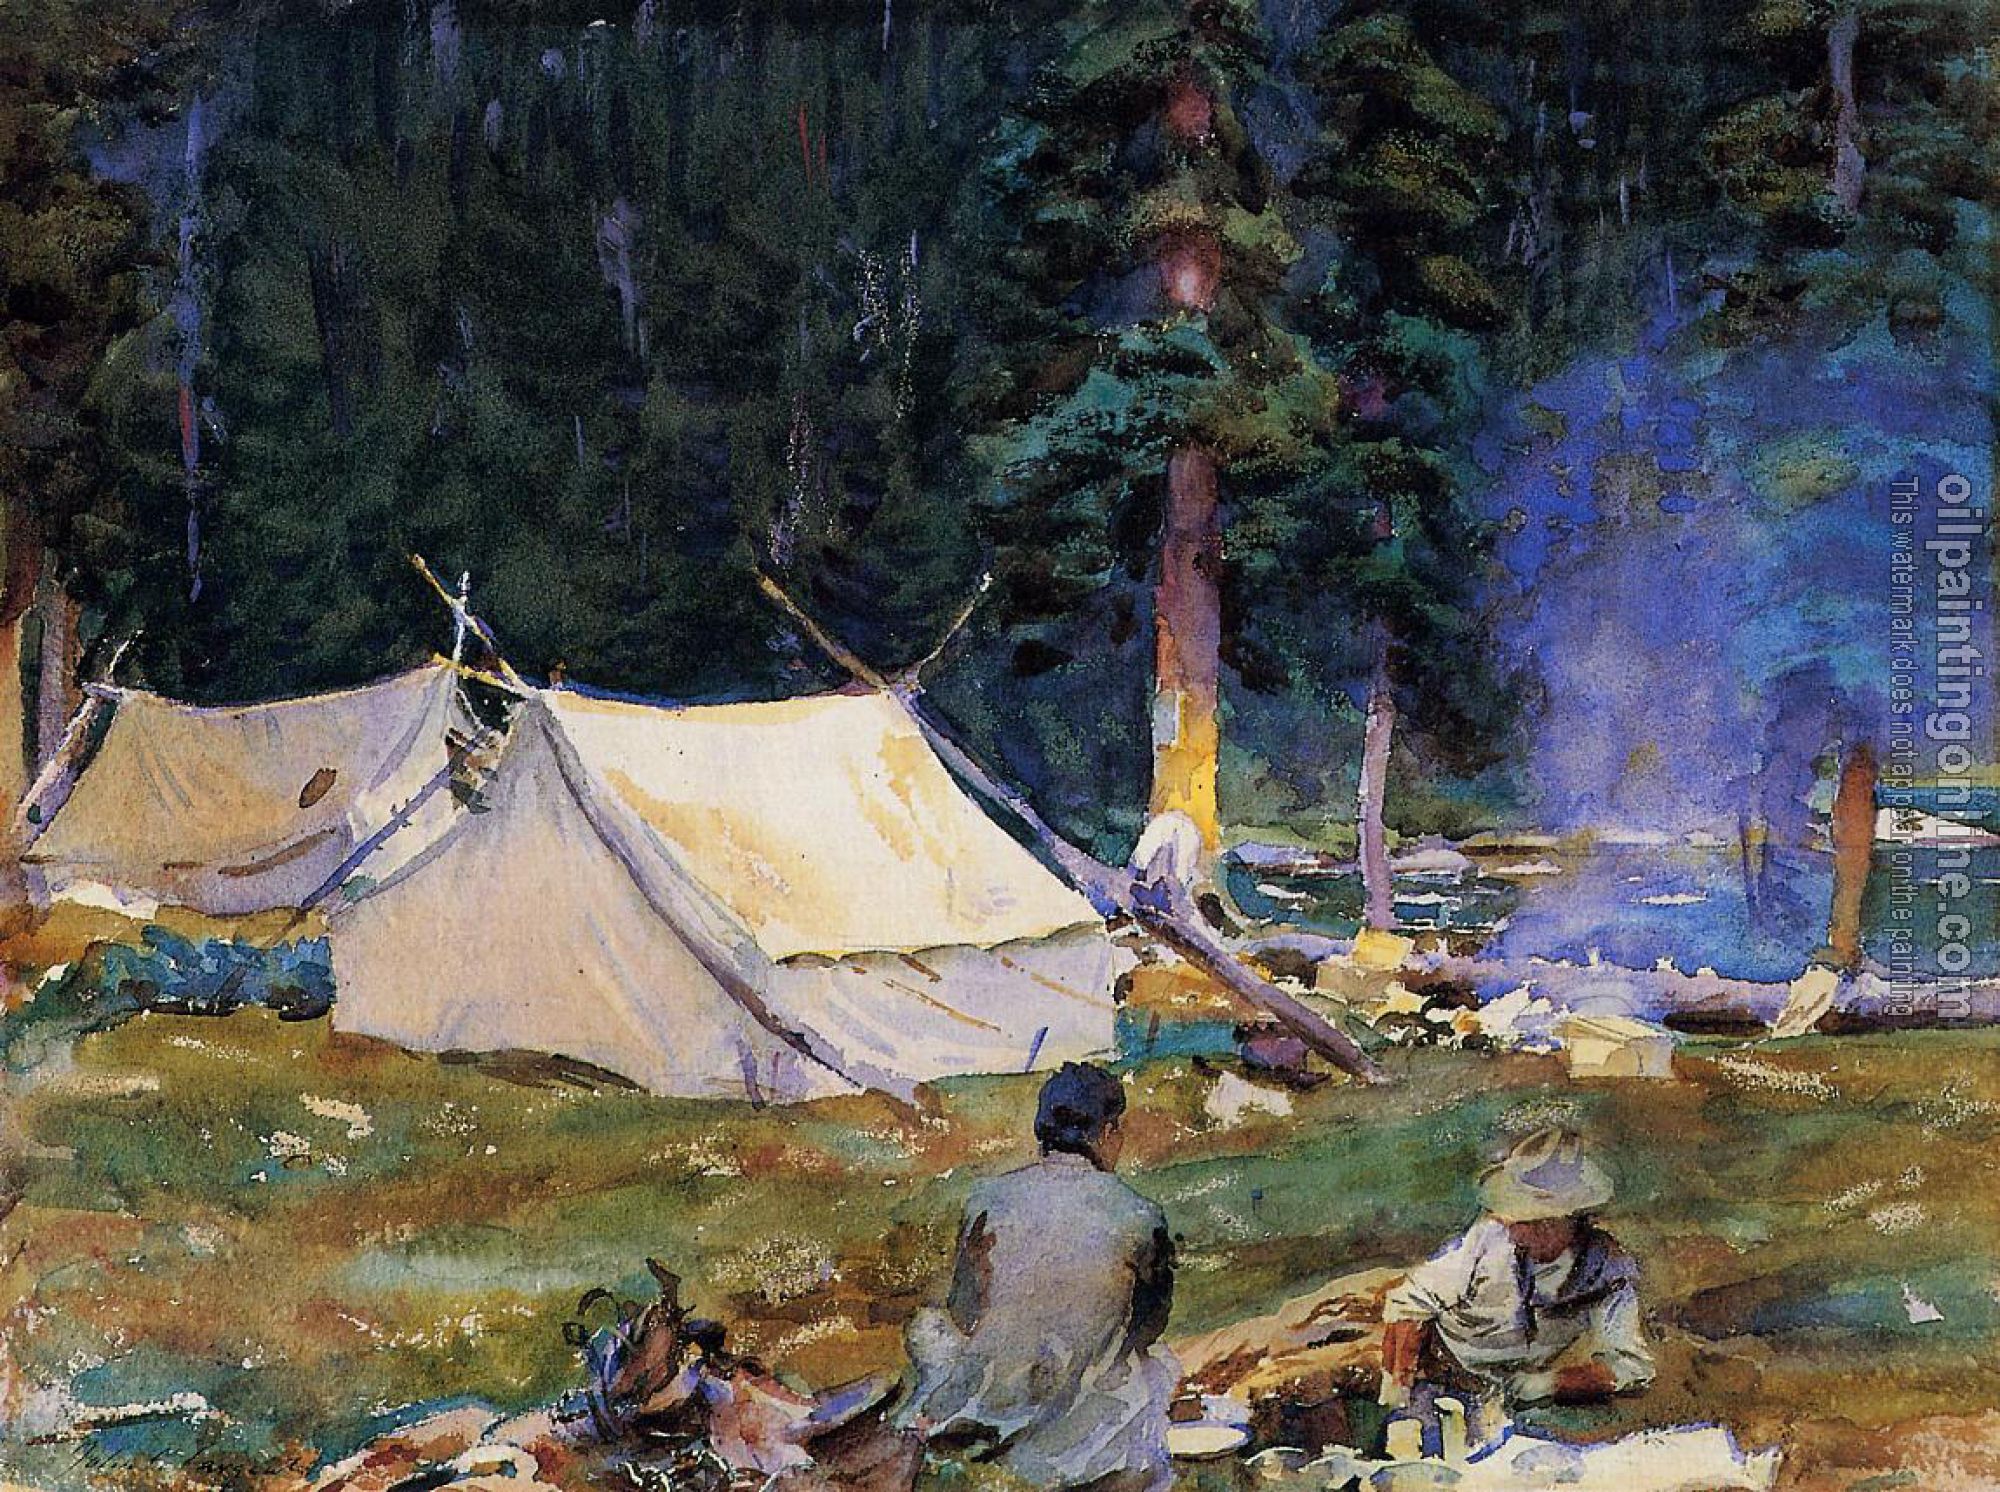 Sargent, John Singer - Camping at Lake O'Hara